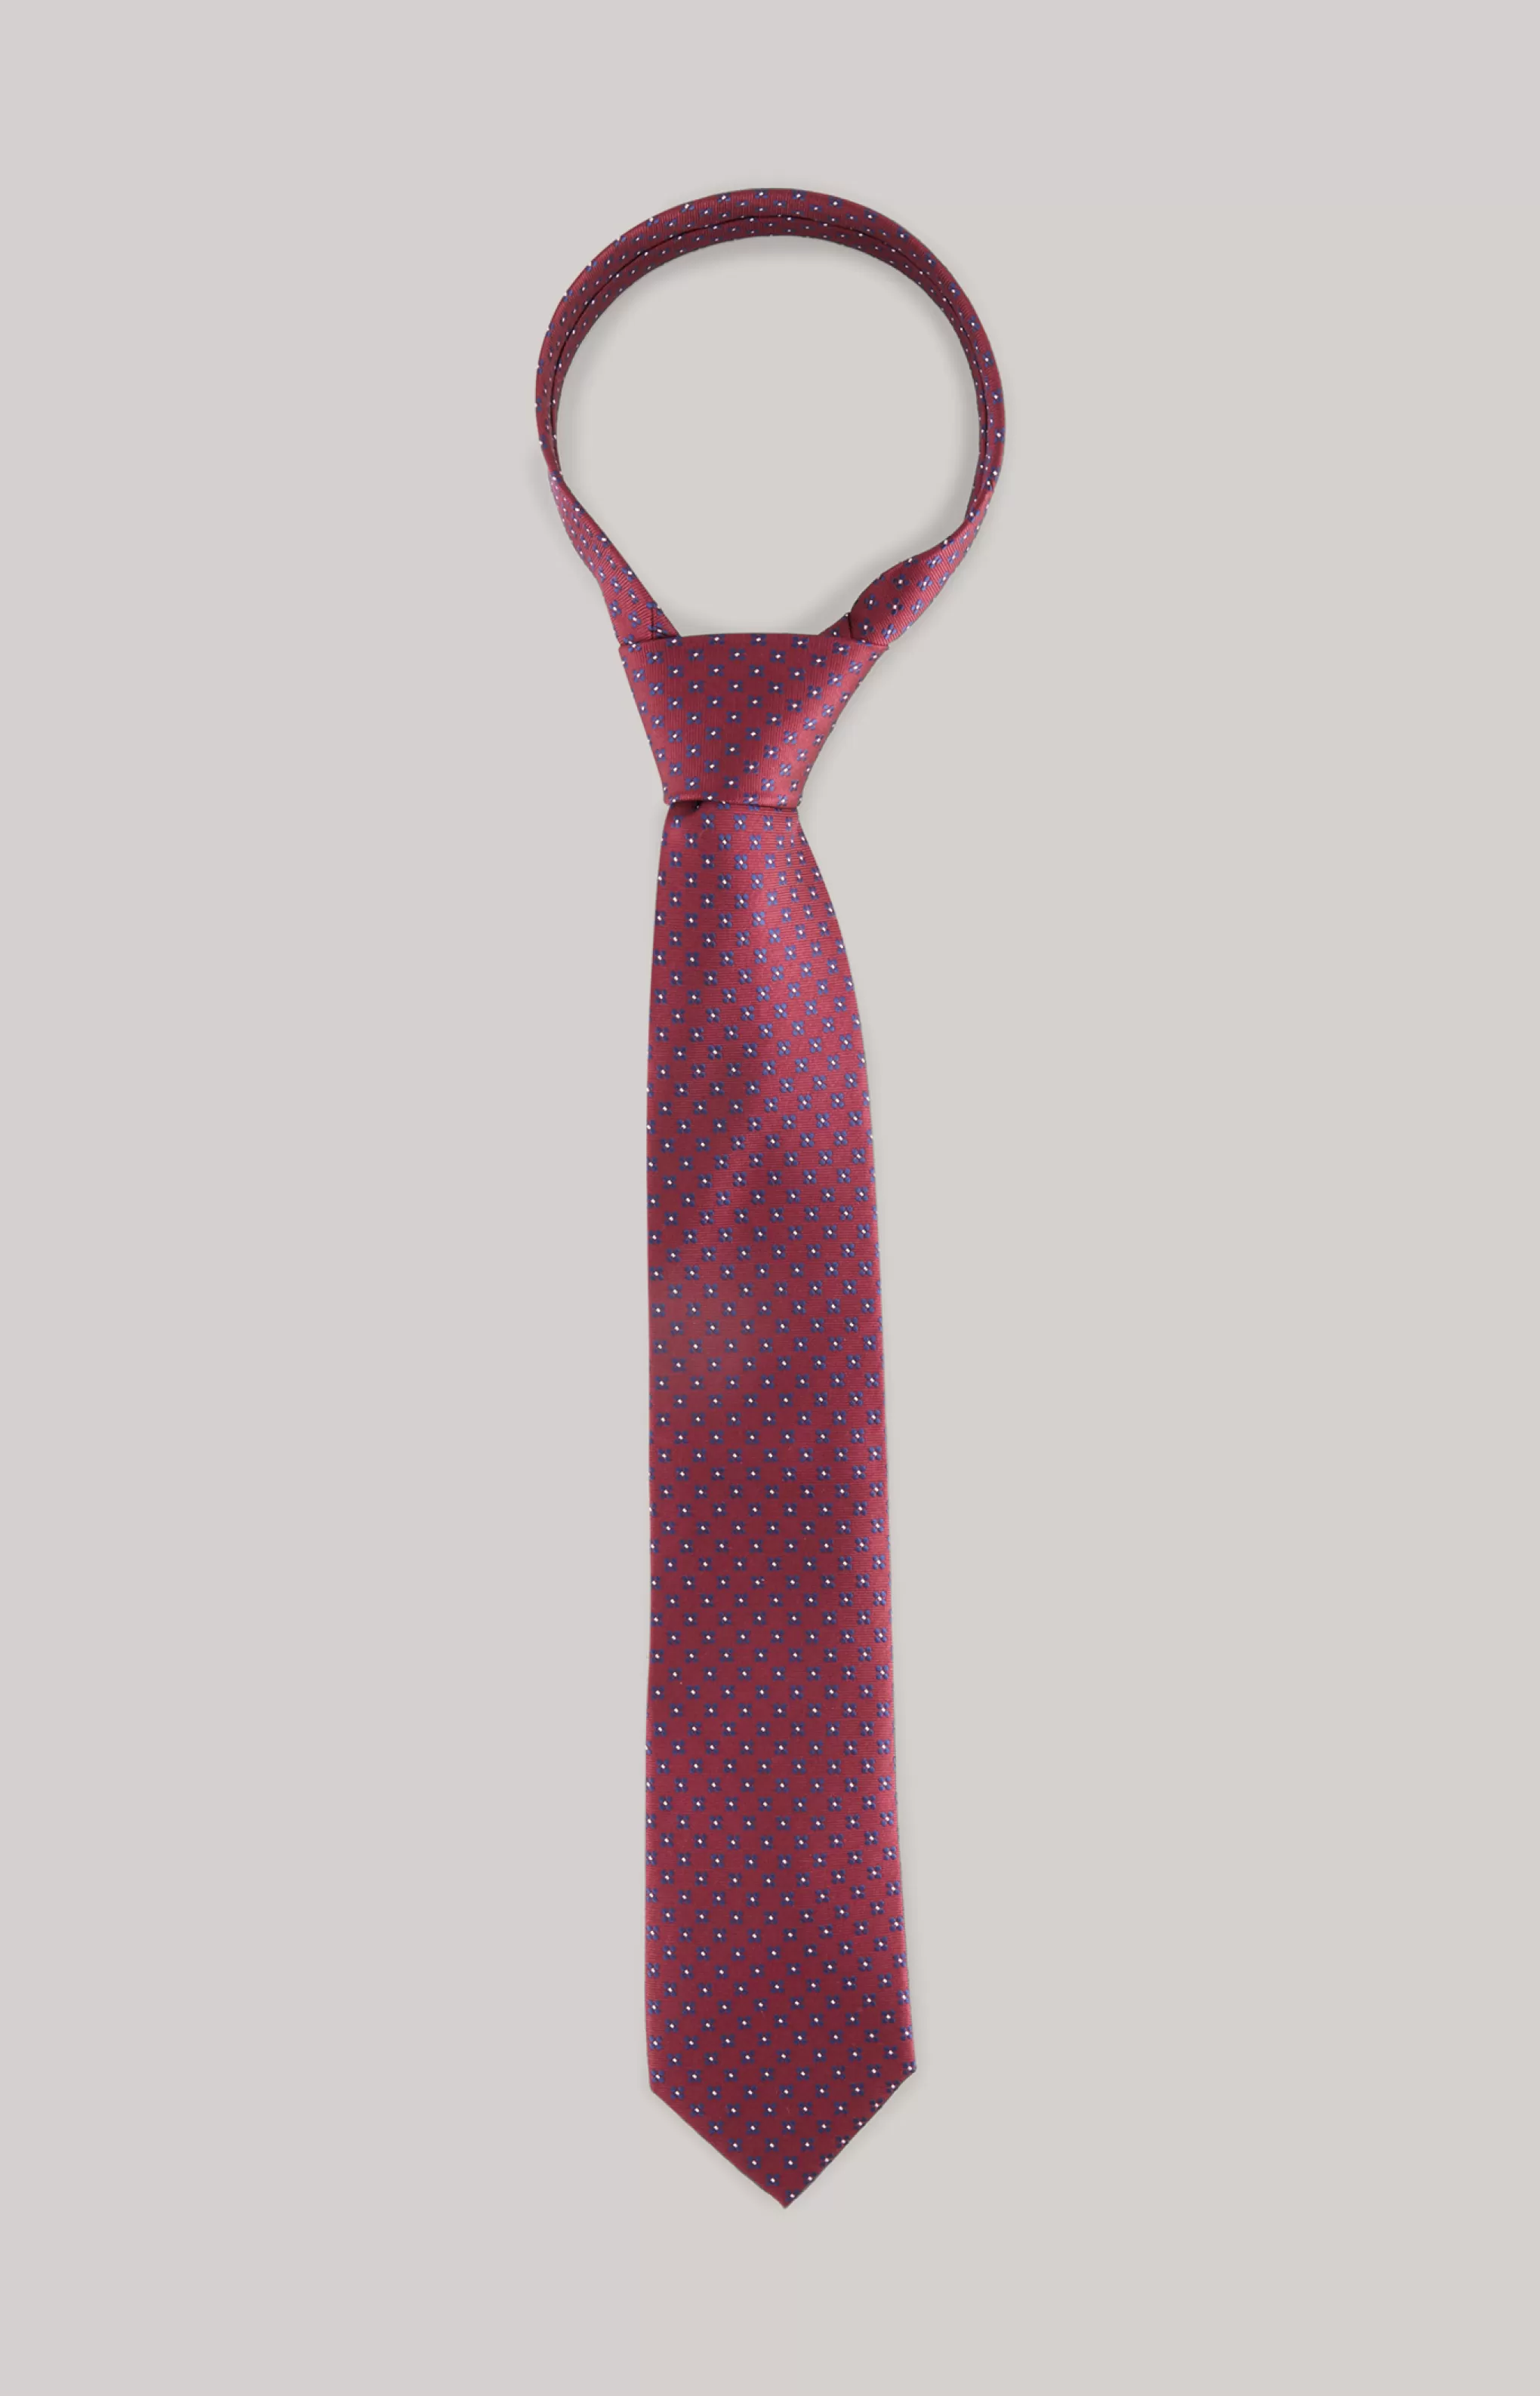 Ties & Bow Ties*JOOP Ties & Bow Ties Silk tie in a dark red pattern